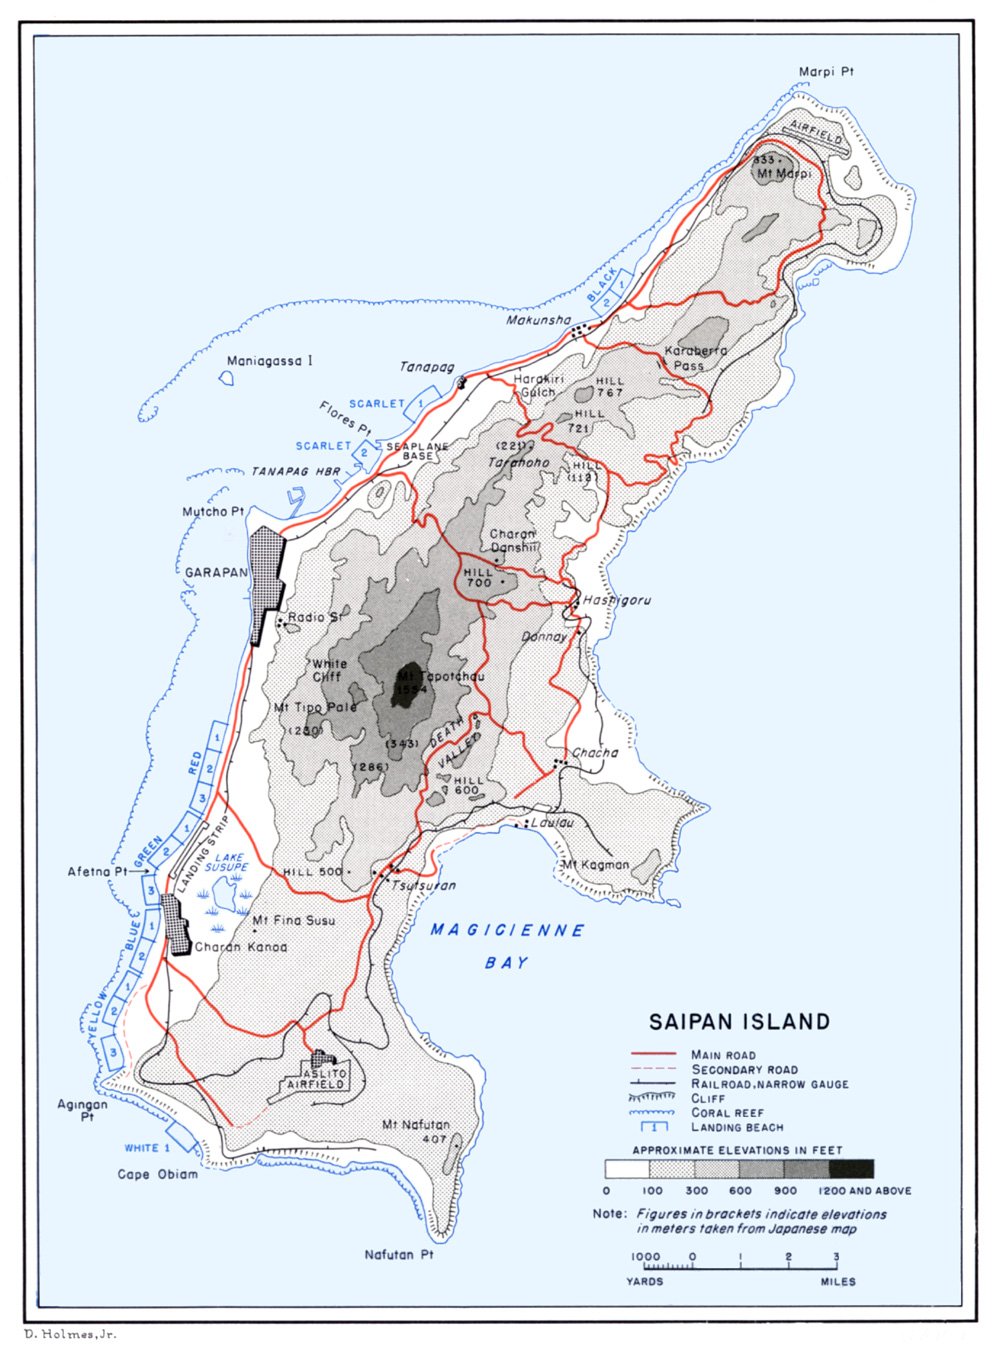 Saipan Road Map